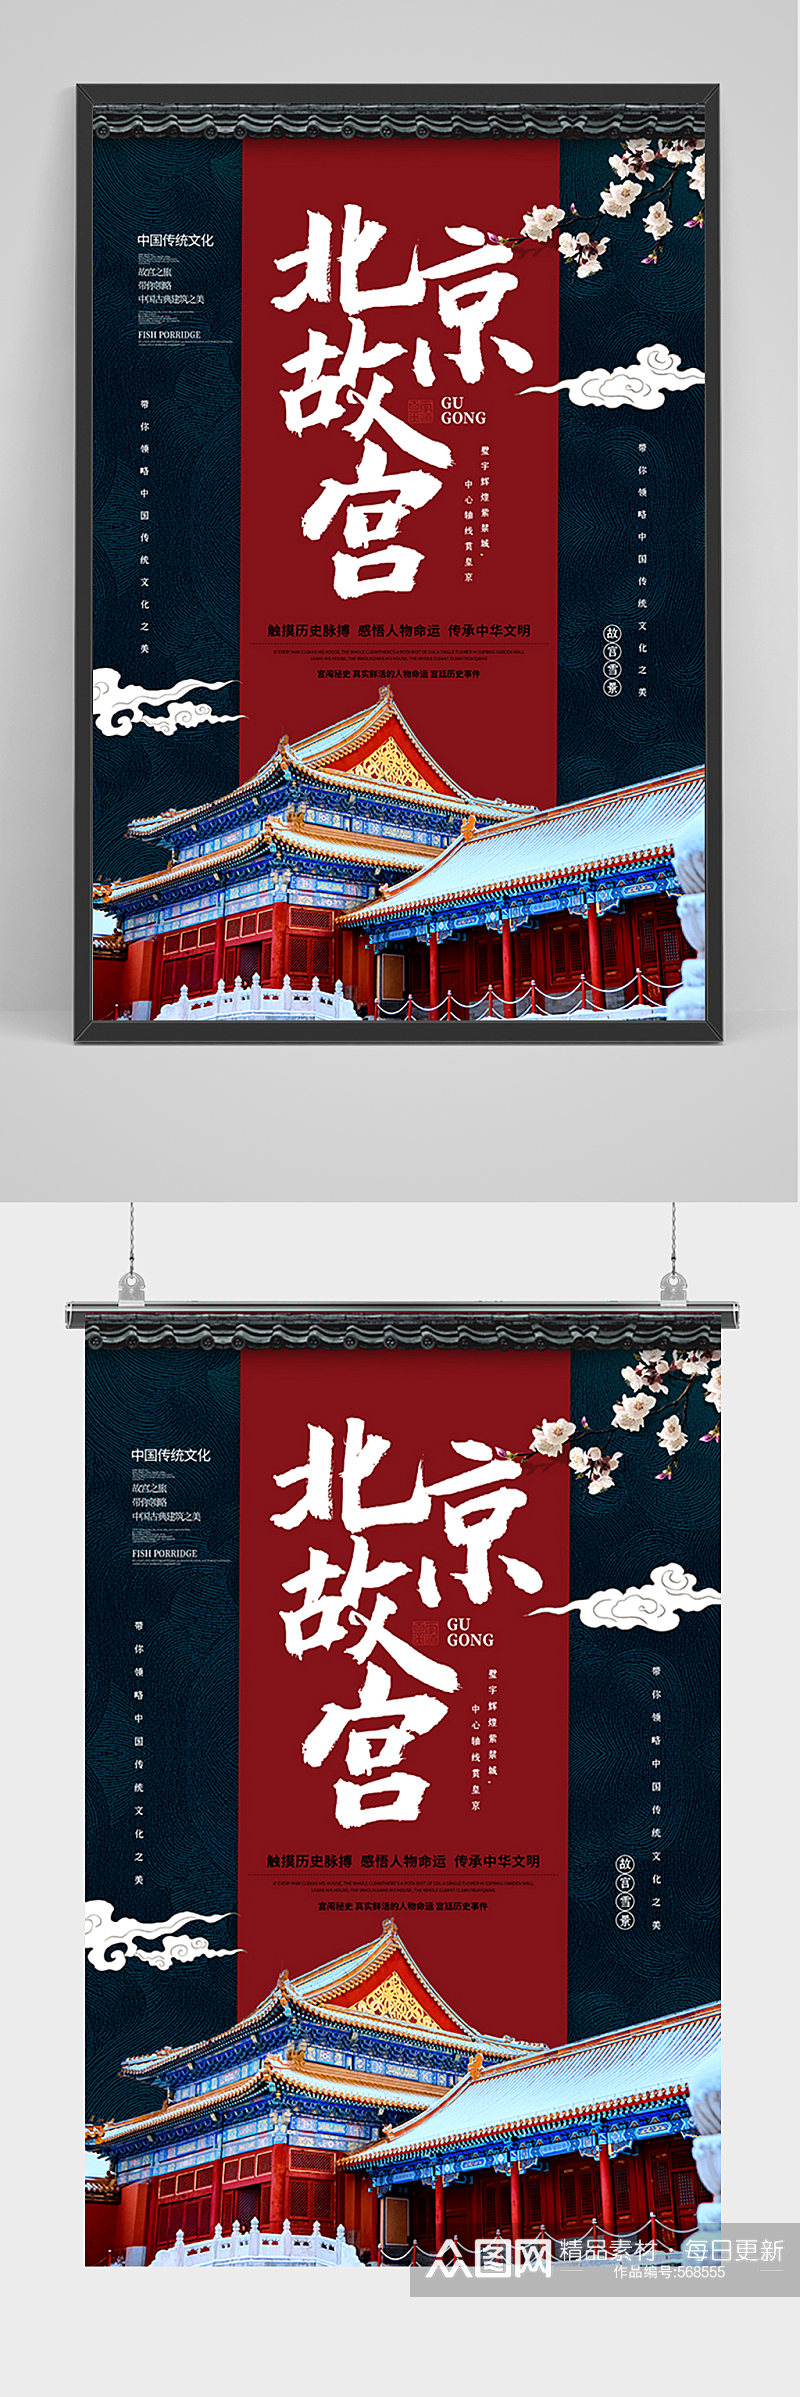 北京故宫之旅宣传海报素材